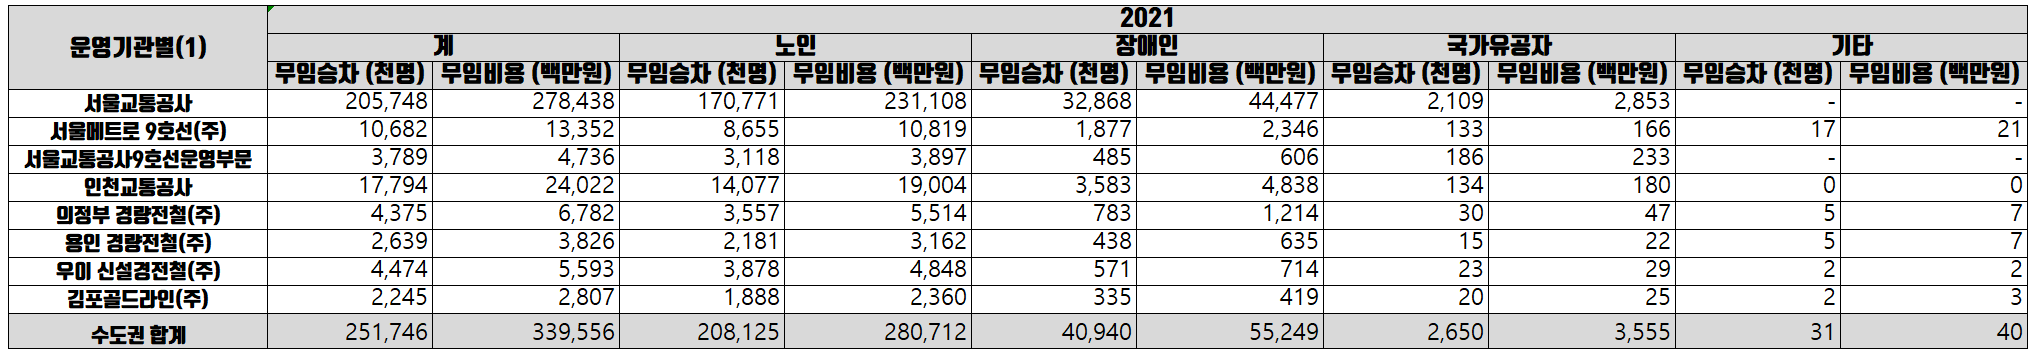 2021년-수도권-지하철-무임승차-대상별-현황-표